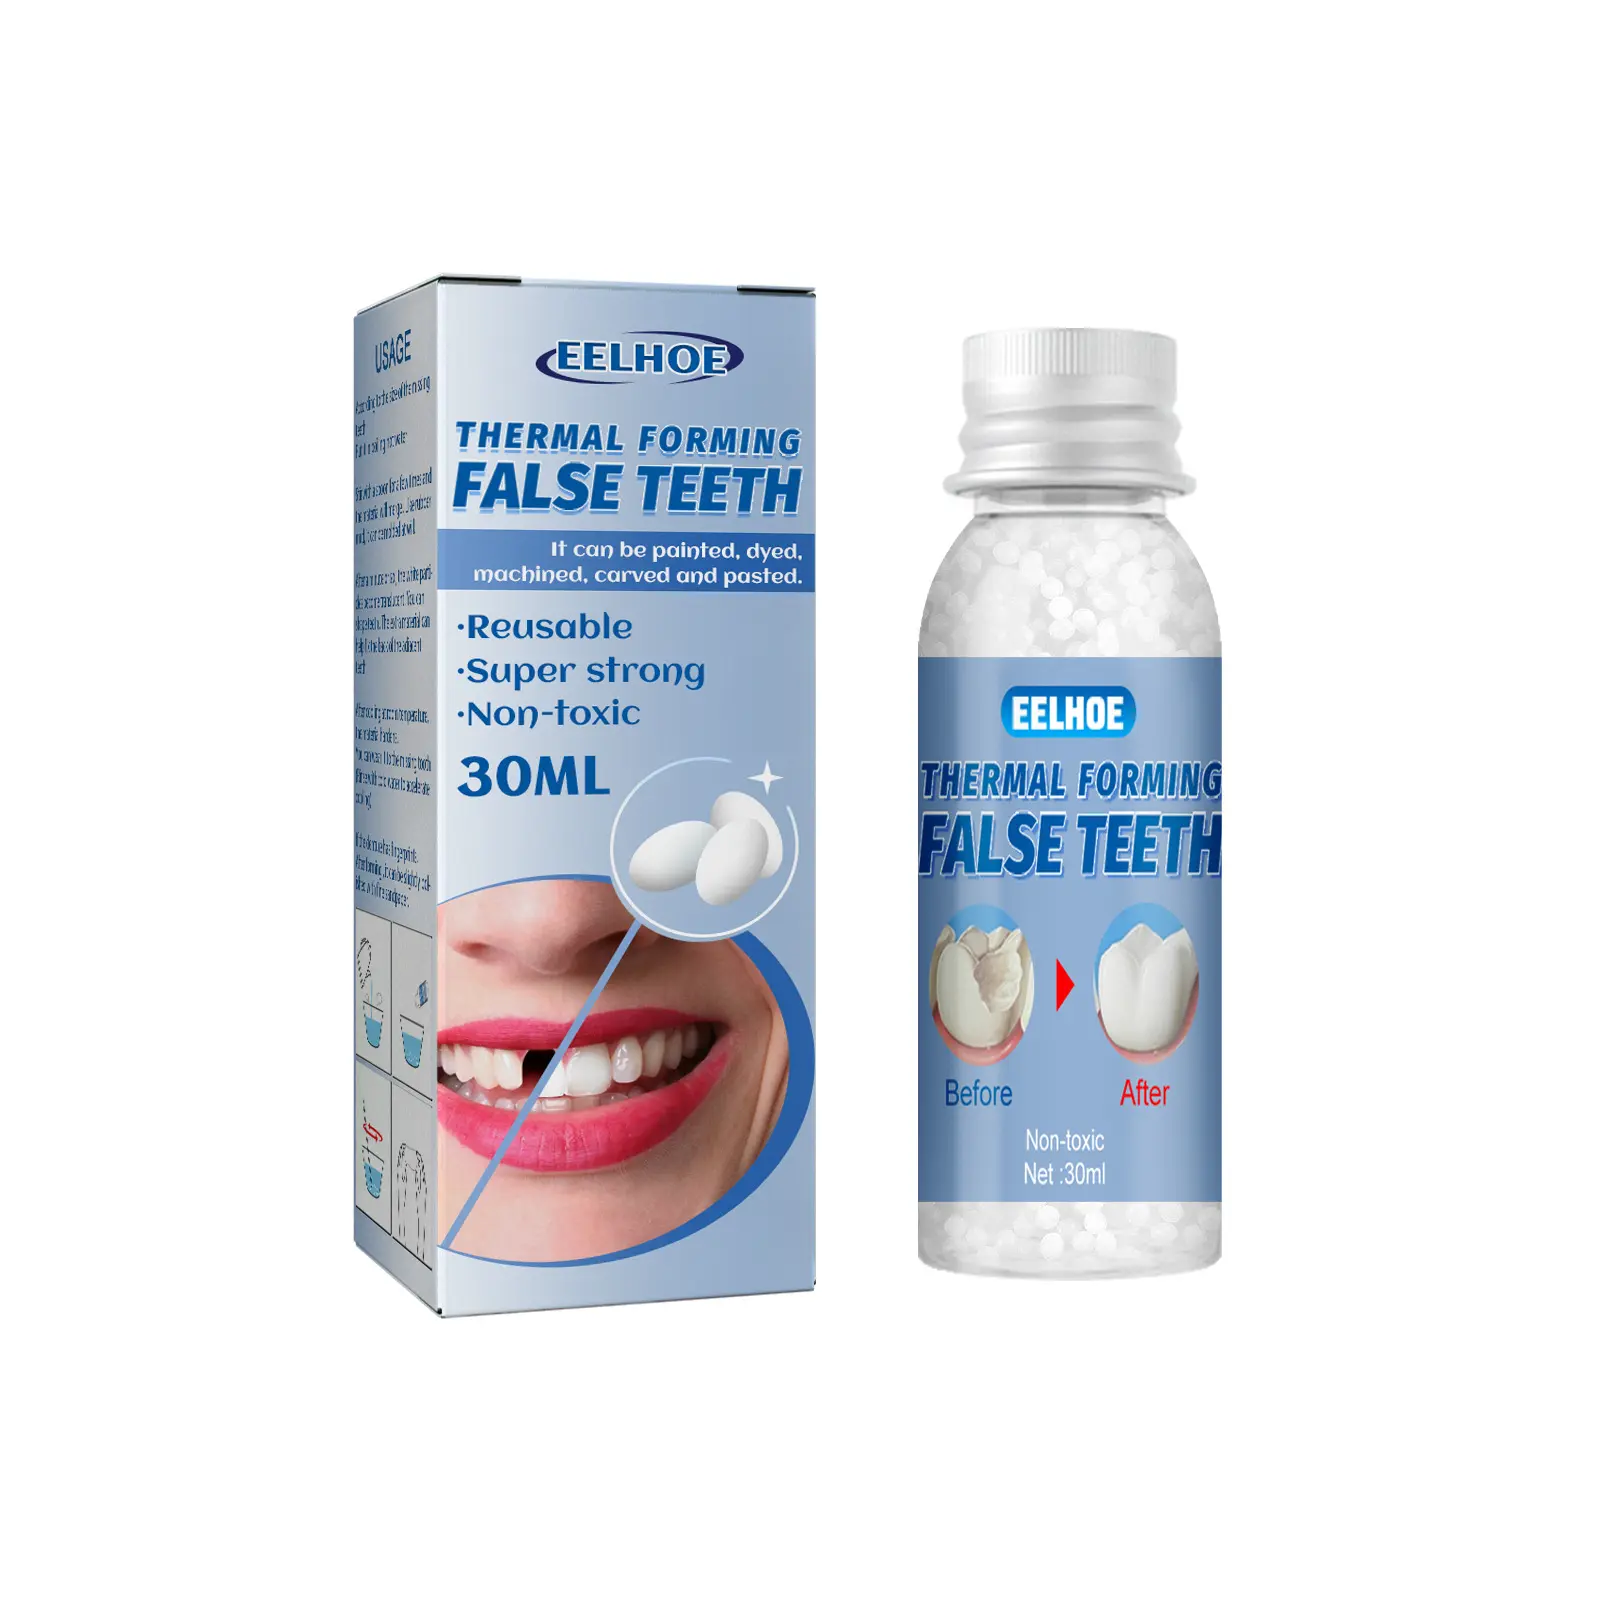 EELHOE طقم أسنان مزدوج قوي قابل لإعادة الاستخدام مكون من أسنان اصطناعية للتعديل والتجميل لتعبئة الثغرات داخل الأسنان وتشكيل الأسنان الصناعية بالغراء الحراري